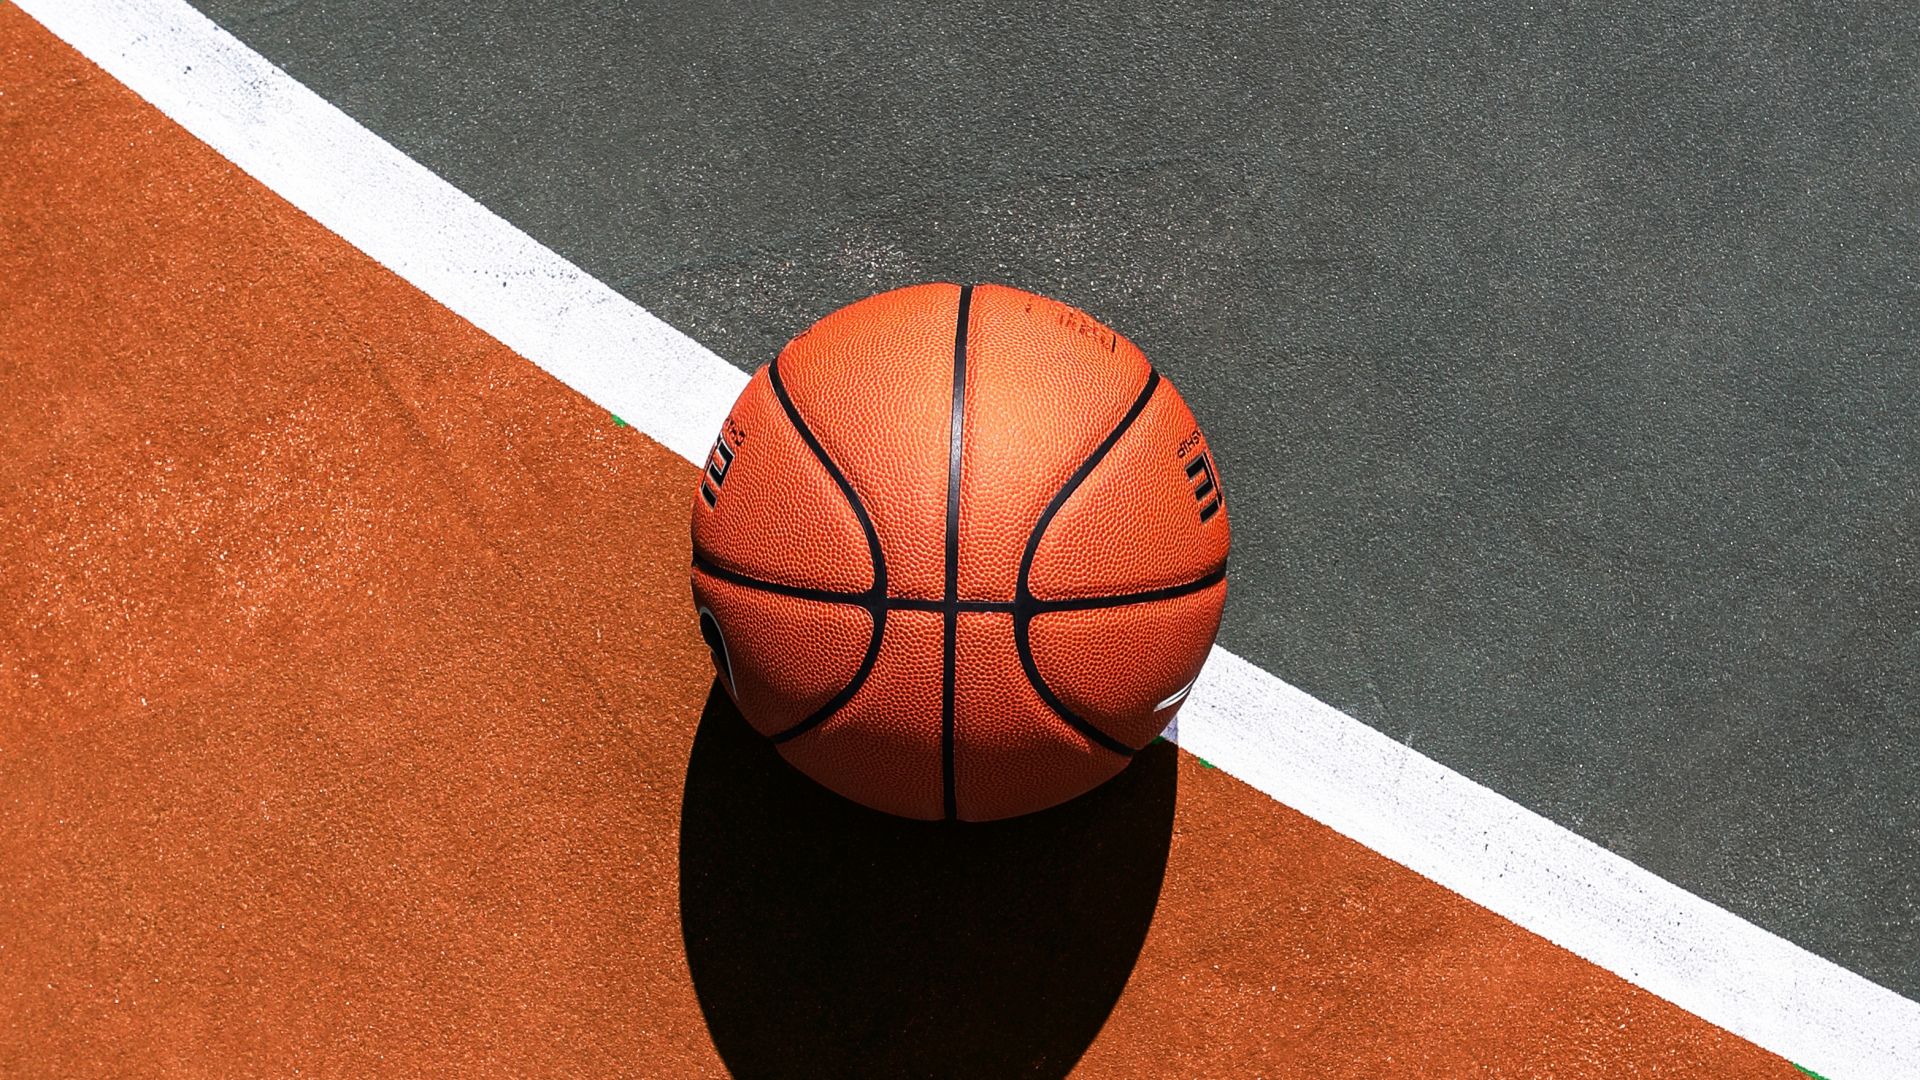 Basketball. Desktop wallpaper. 1920x1080